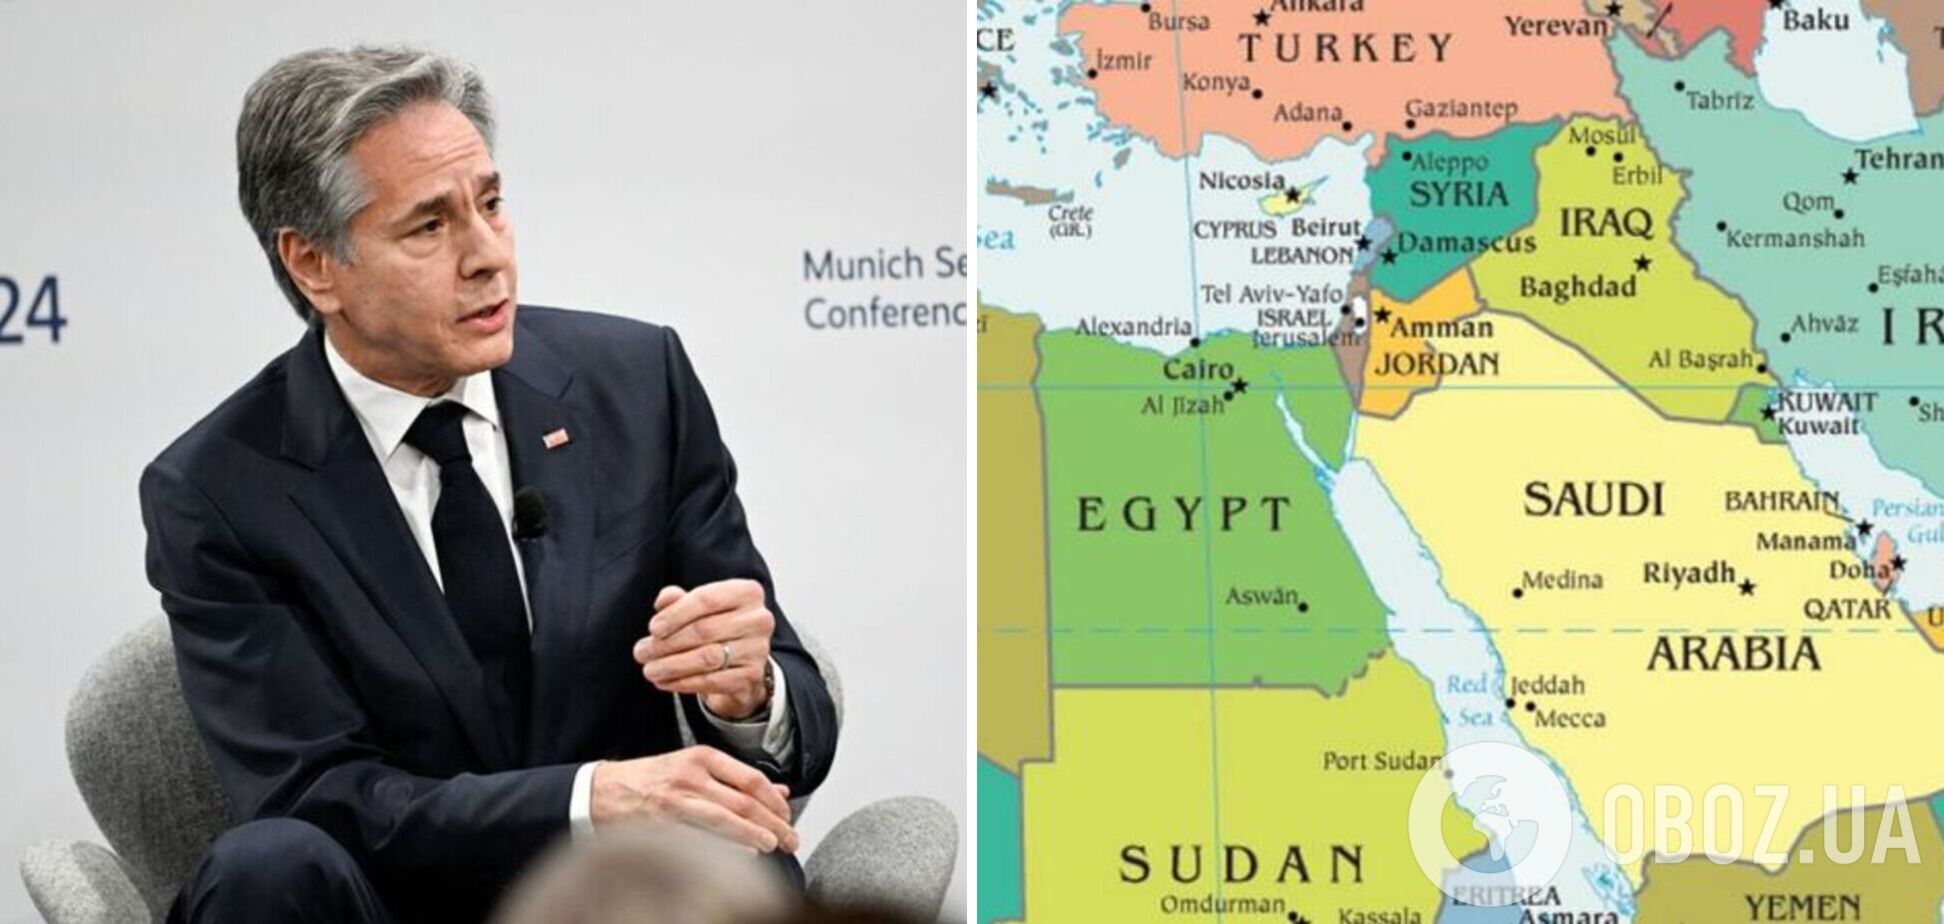 'Практически каждая арабская страна ищет связи': Блинкен указал на историческую возможность для Израиля